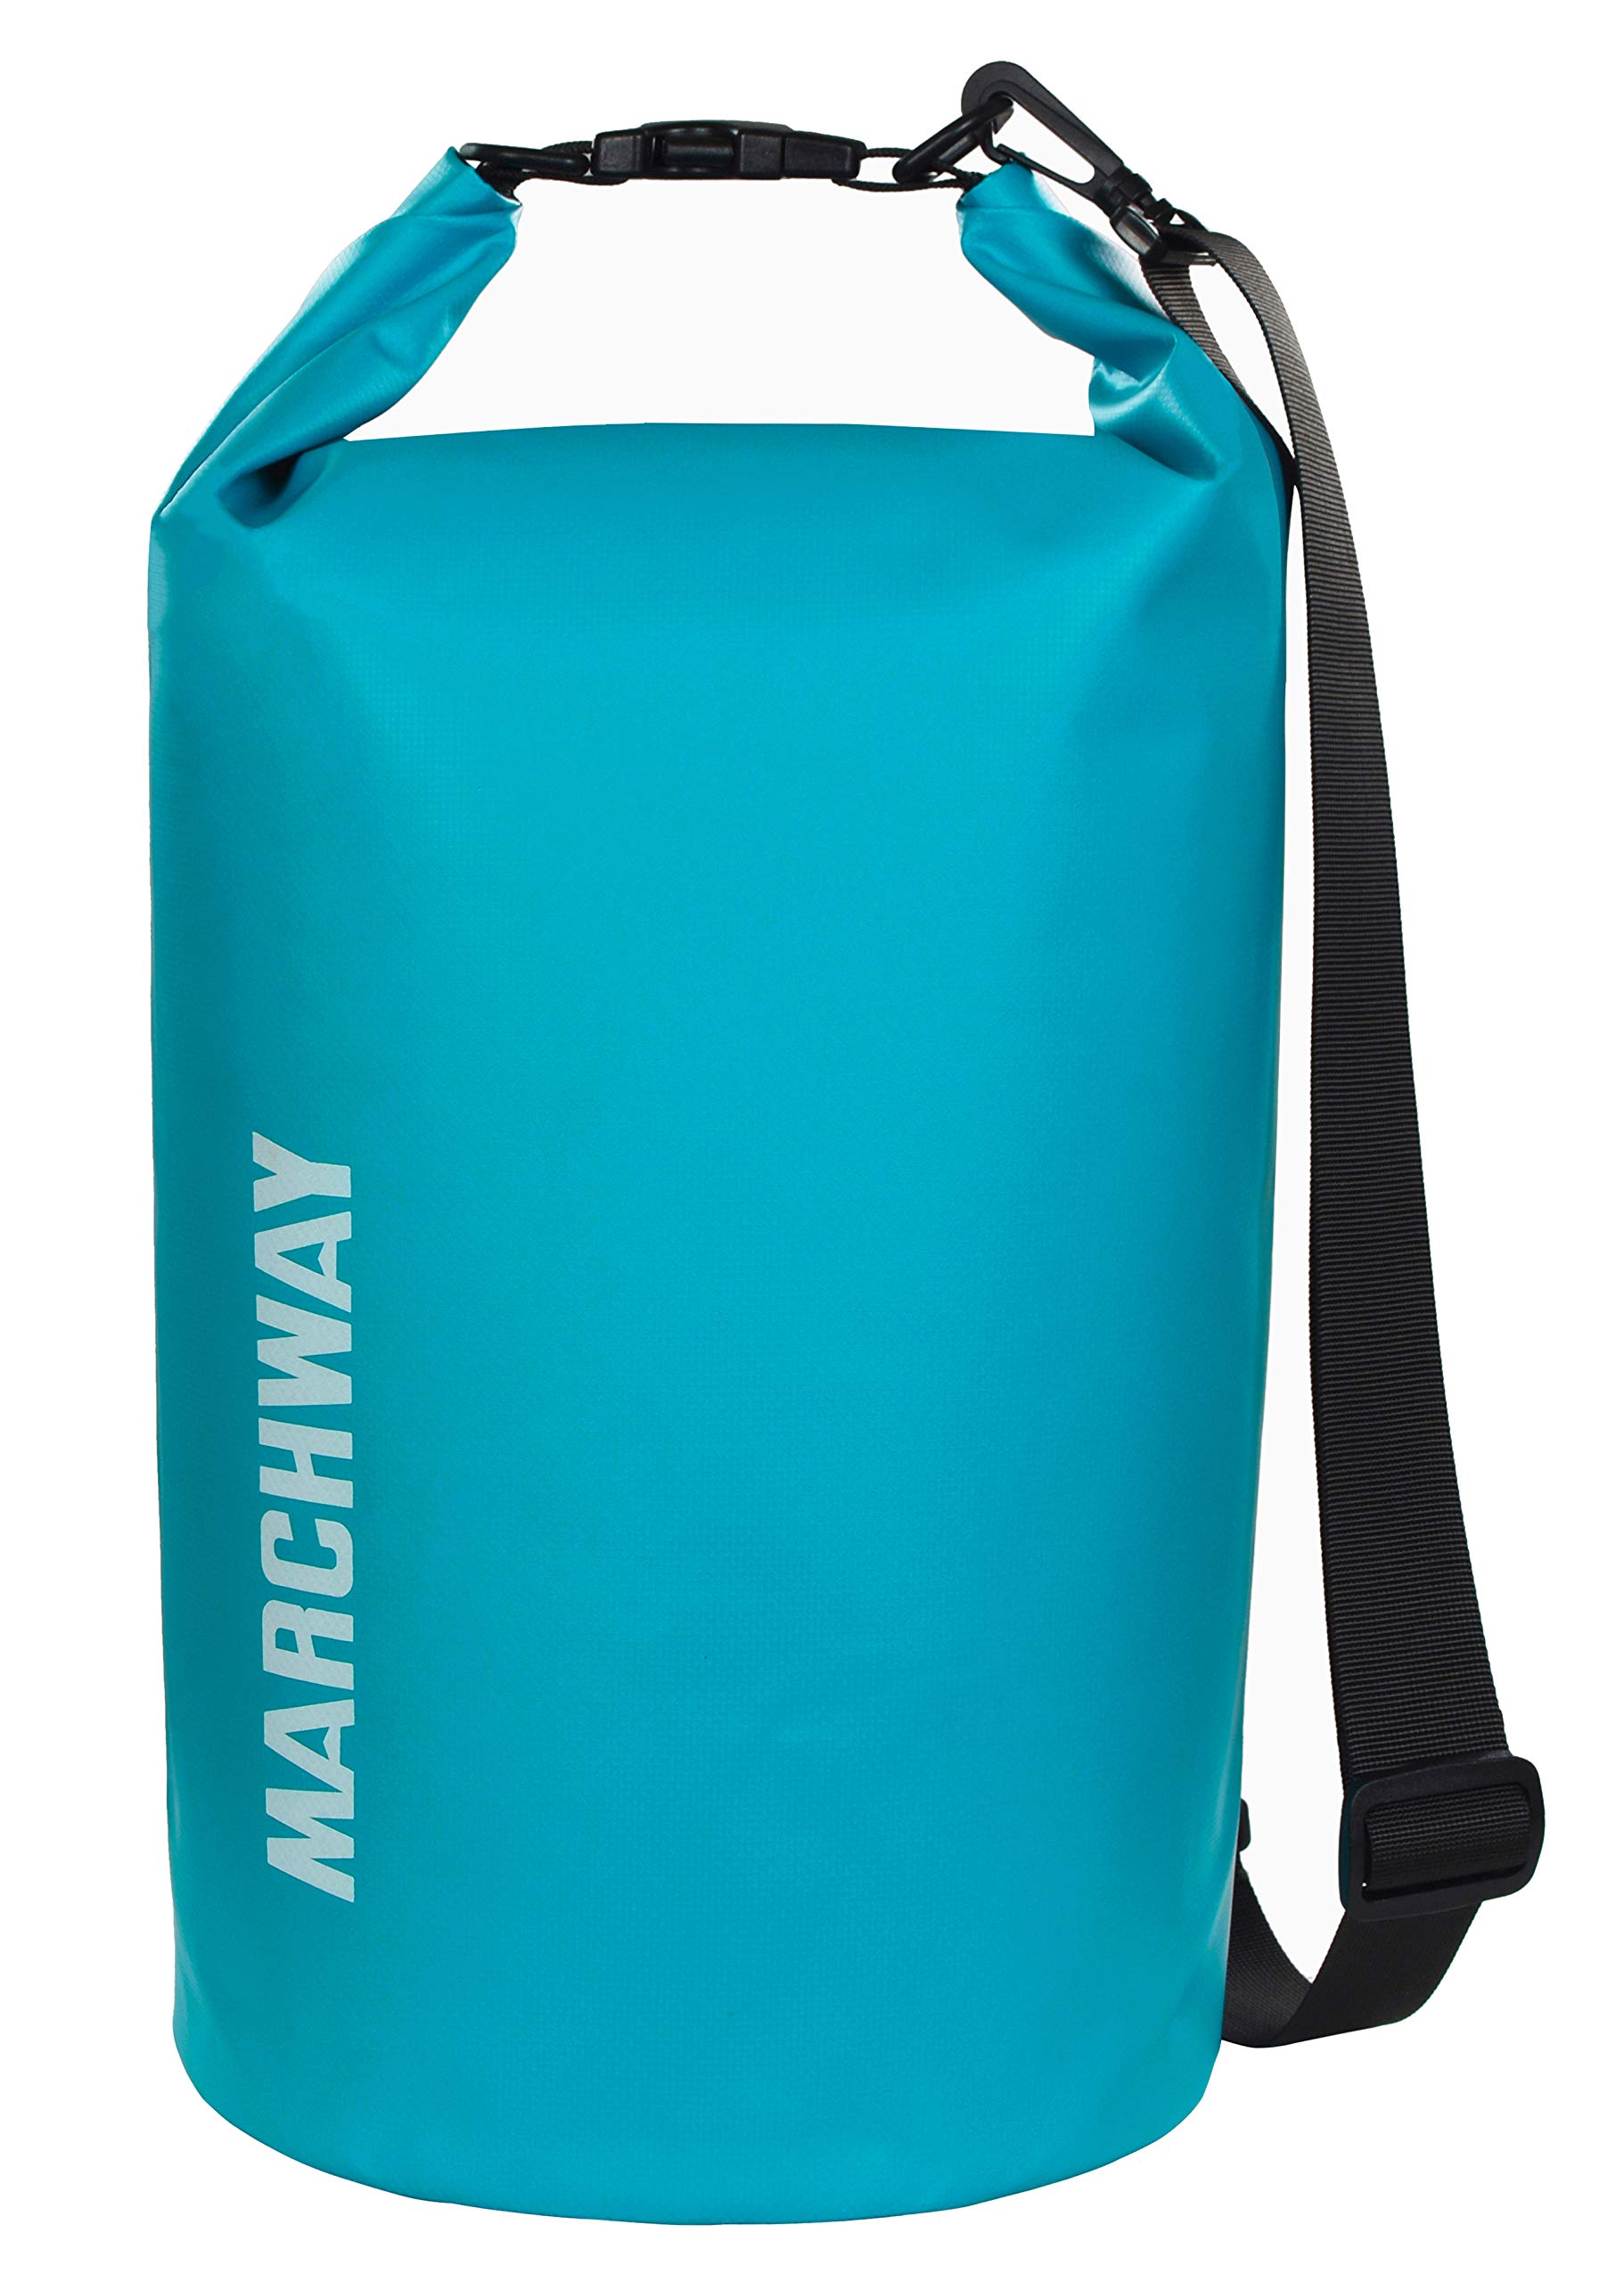 MARCHWAY Floating Waterproof Dry Bag 5L/10L/20L/30L/40L, Roll Top